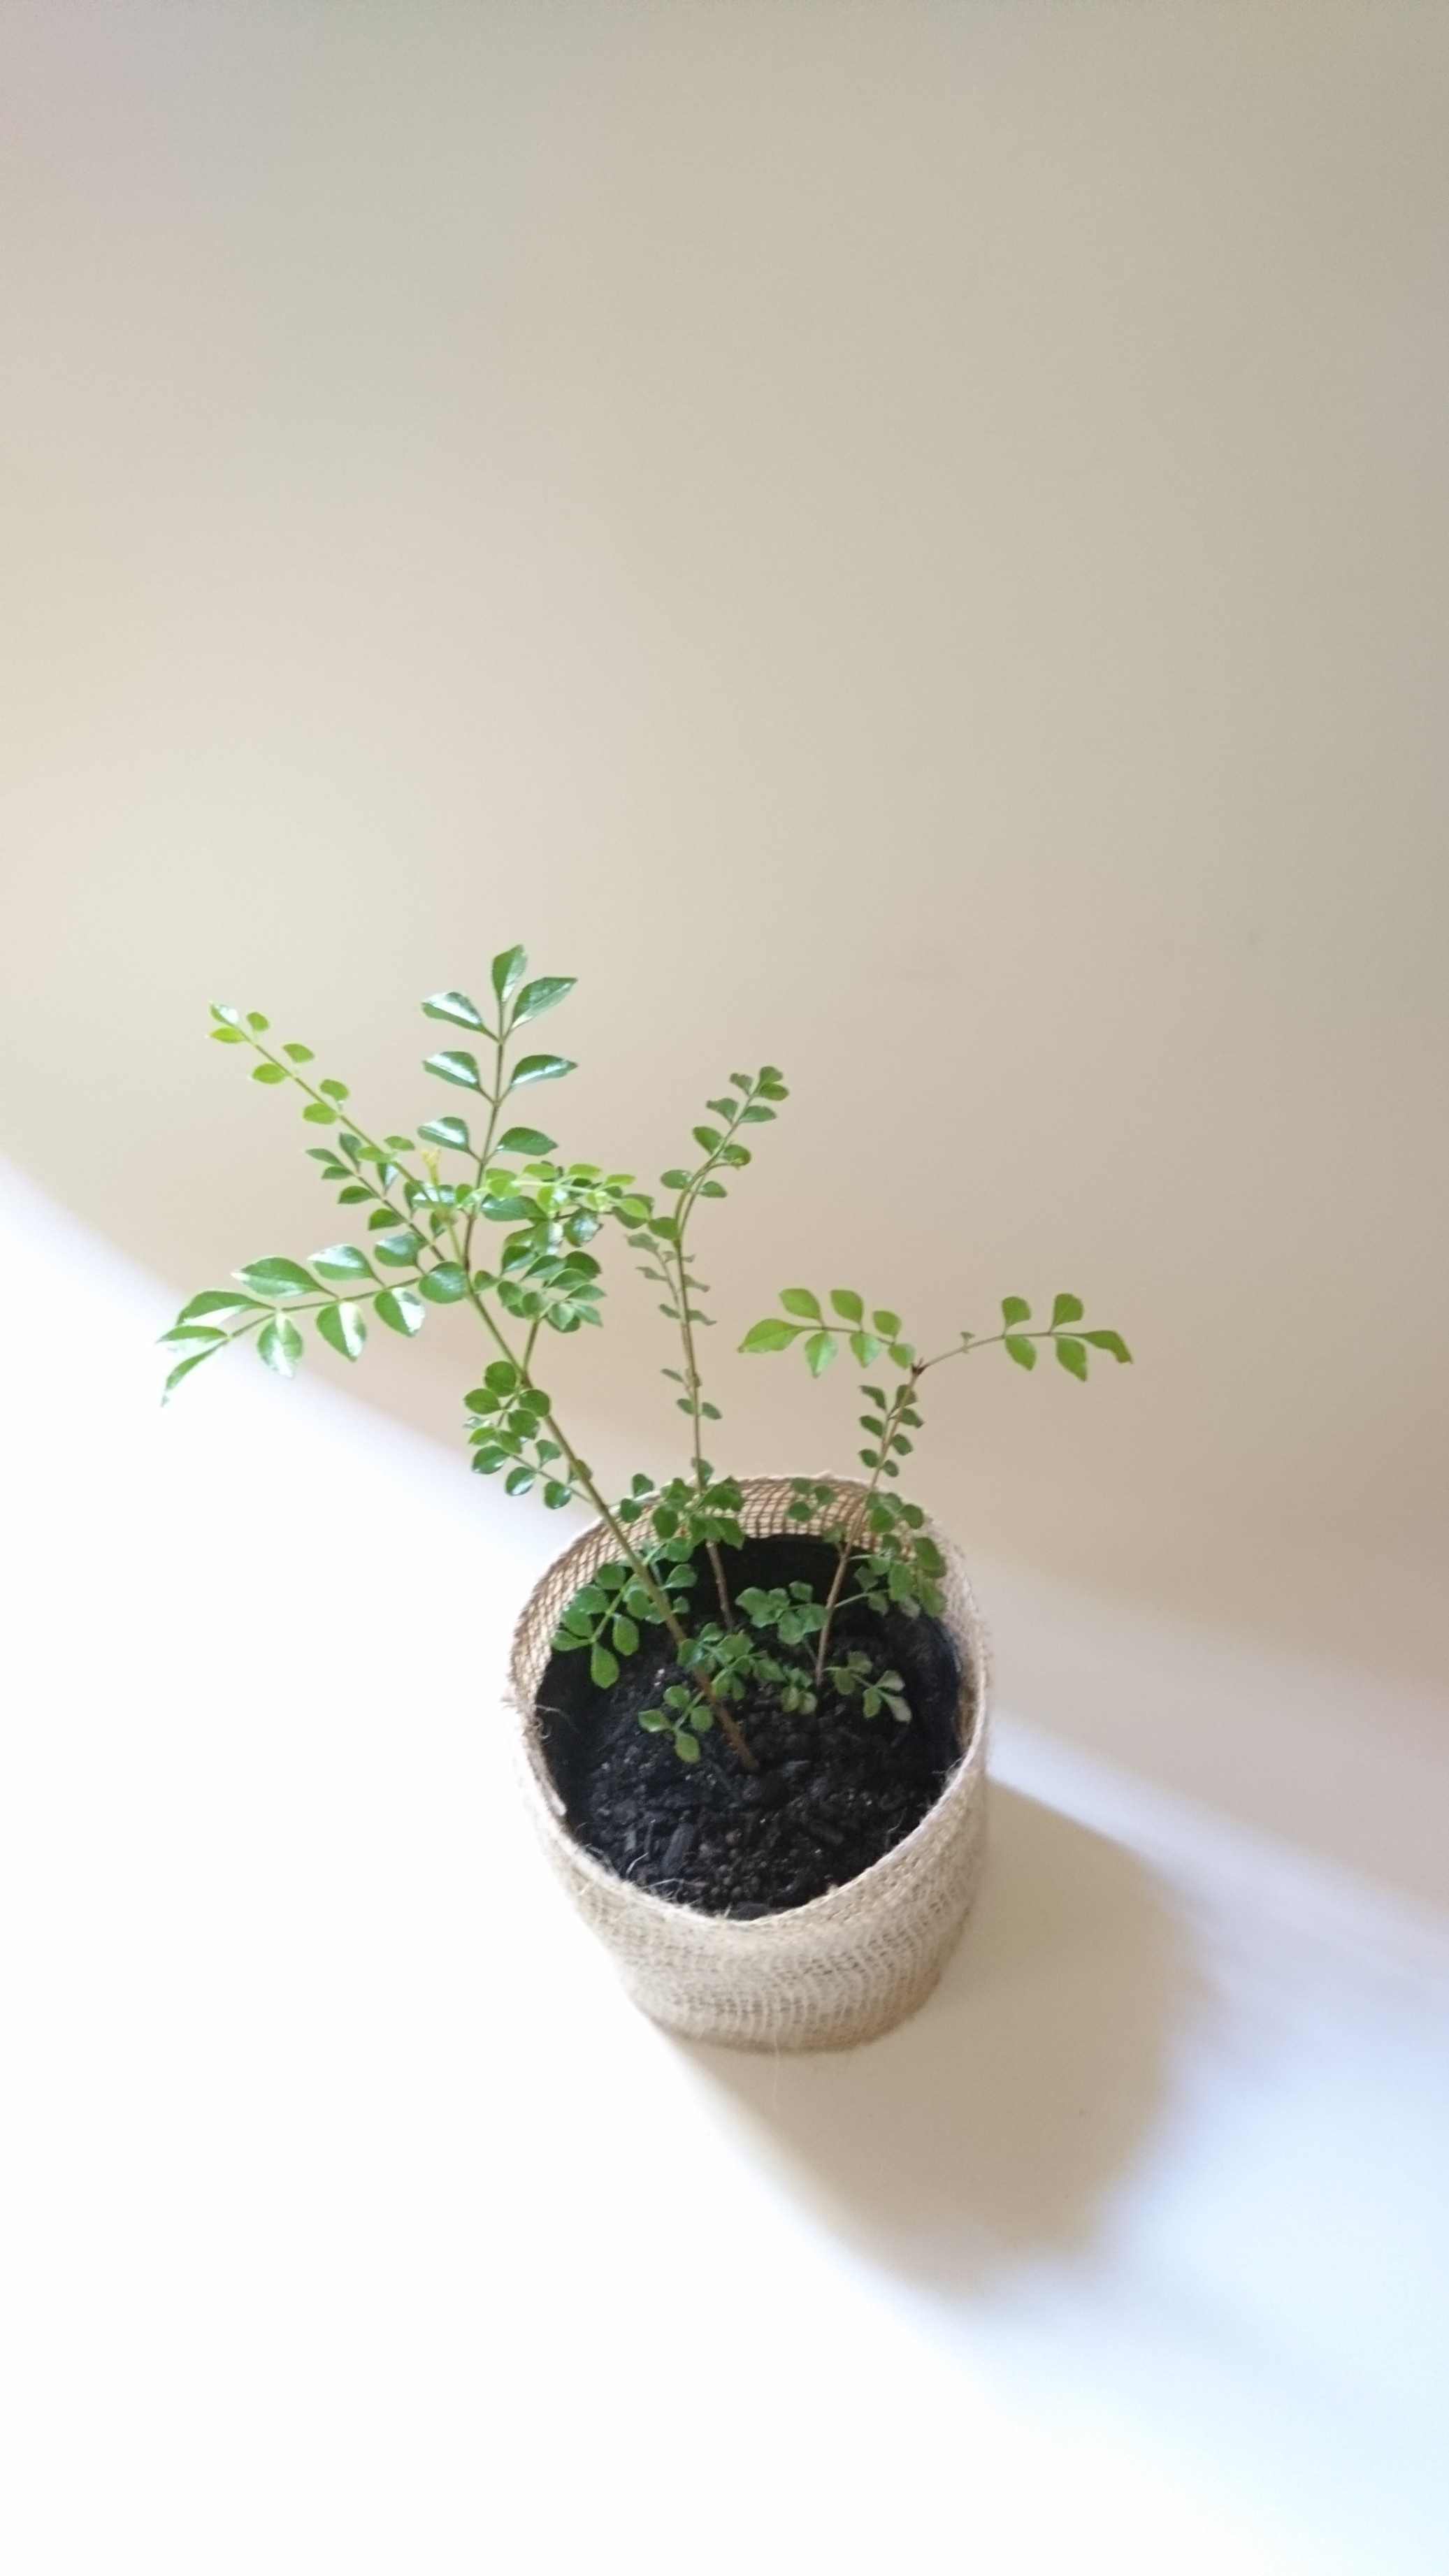 シマトネリコ 苗木 約16 30cm シンボルツリーとして人気の樹種です Iichi ハンドメイド クラフト作品 手仕事品の通販